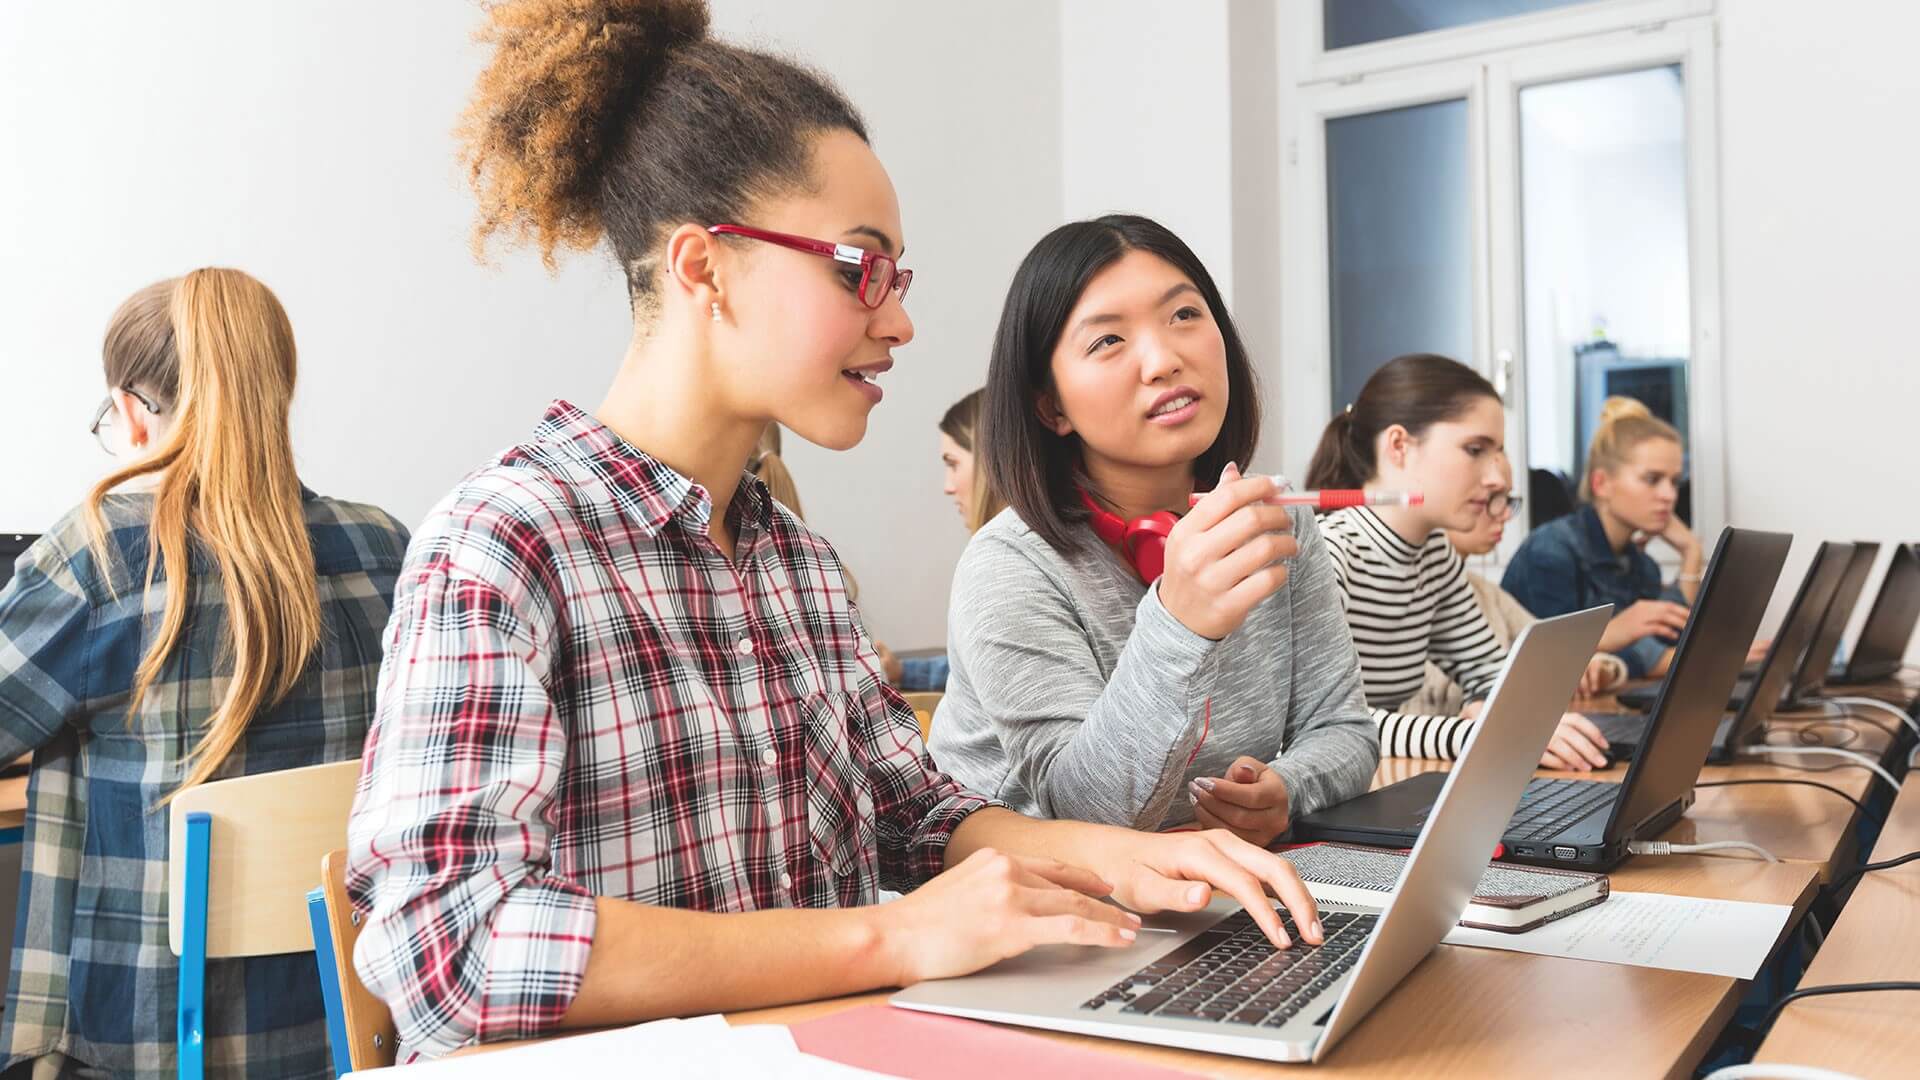 Étudiants engagés dans un apprentissage collaboratif avec des ordinateurs portables dans une salle de classe, discutant et partageant activement des idées.